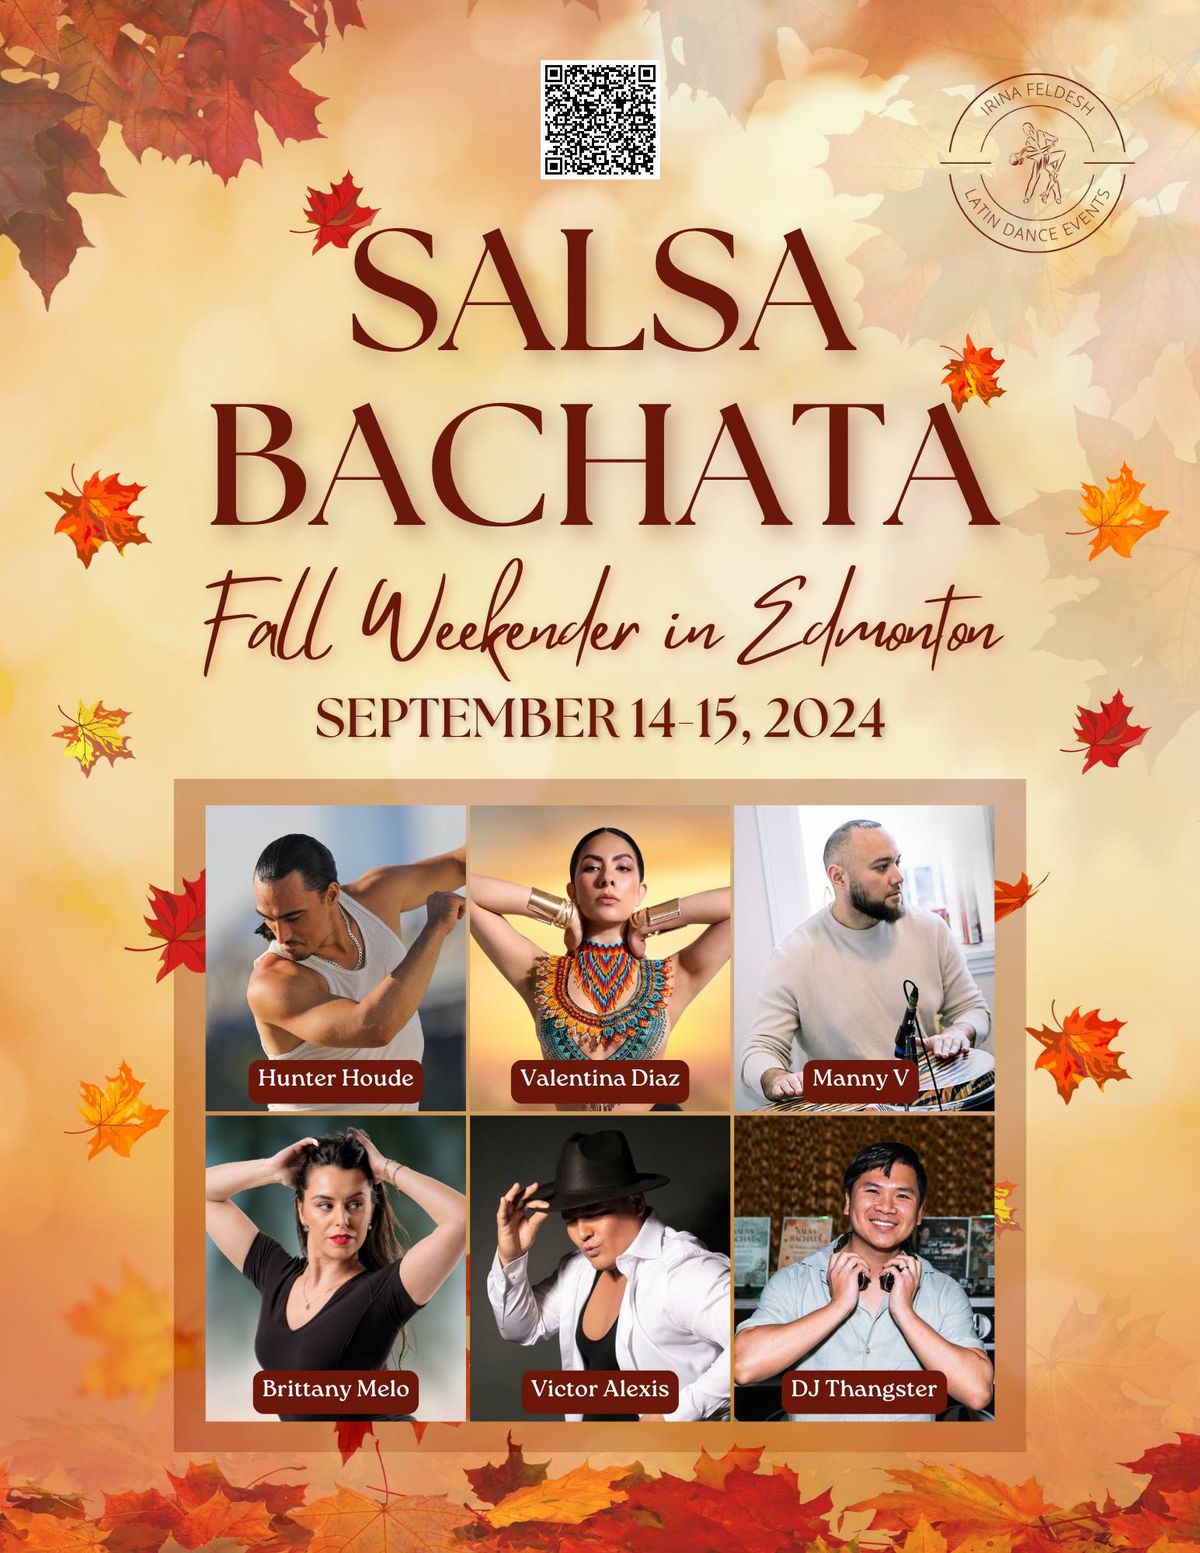 Salsa Bachata International Artist Weekender - Sep 14-15, 2024